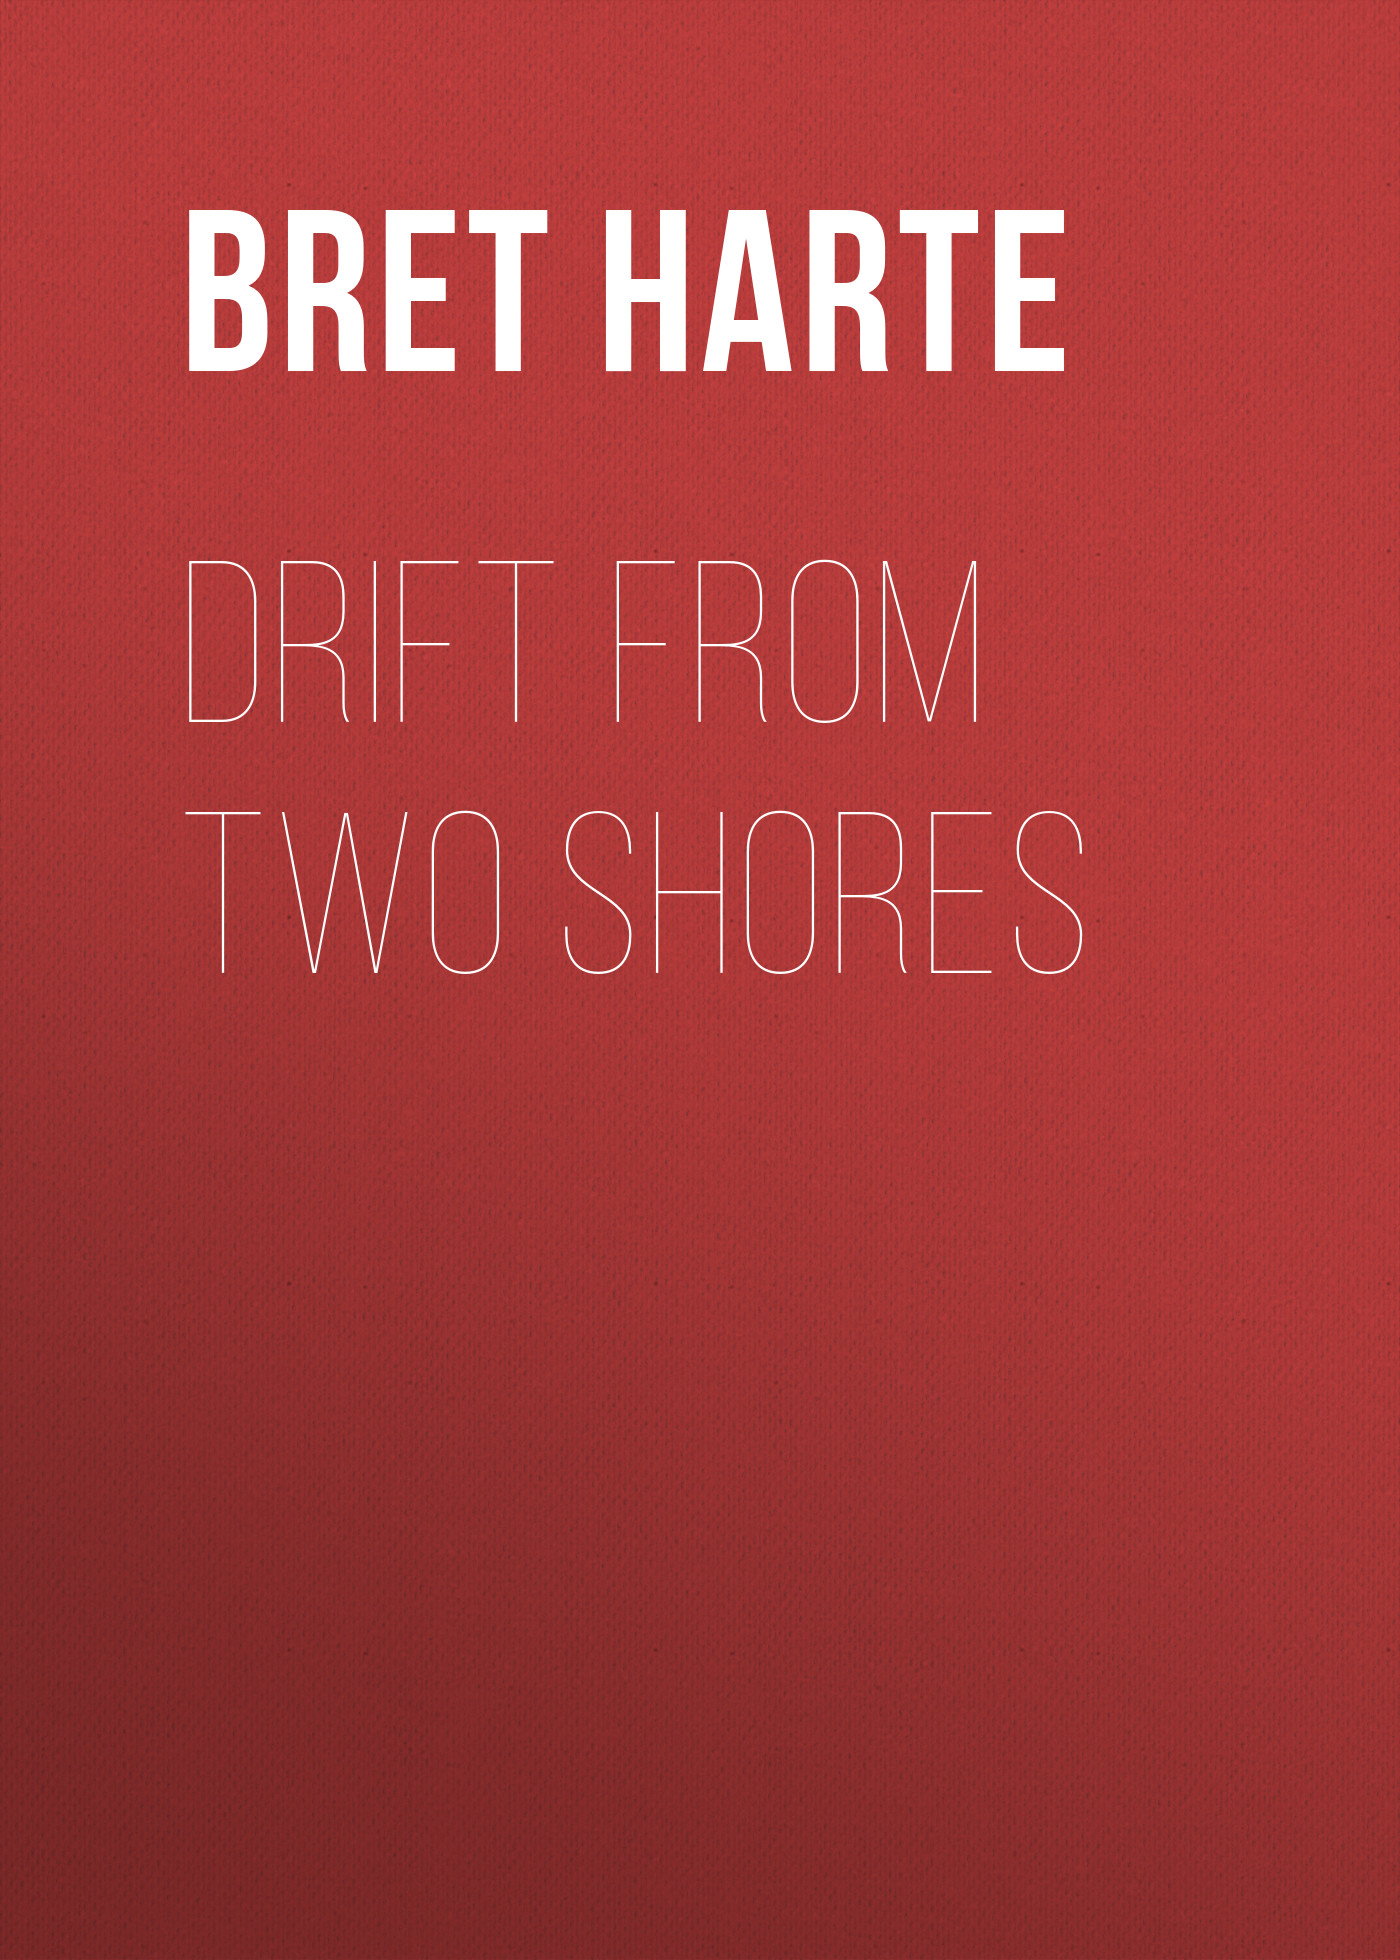 Книга Drift from Two Shores из серии , созданная Bret Harte, может относится к жанру Зарубежная фантастика, Литература 19 века, Зарубежная старинная литература, Зарубежная классика. Стоимость электронной книги Drift from Two Shores с идентификатором 36322988 составляет 0 руб.